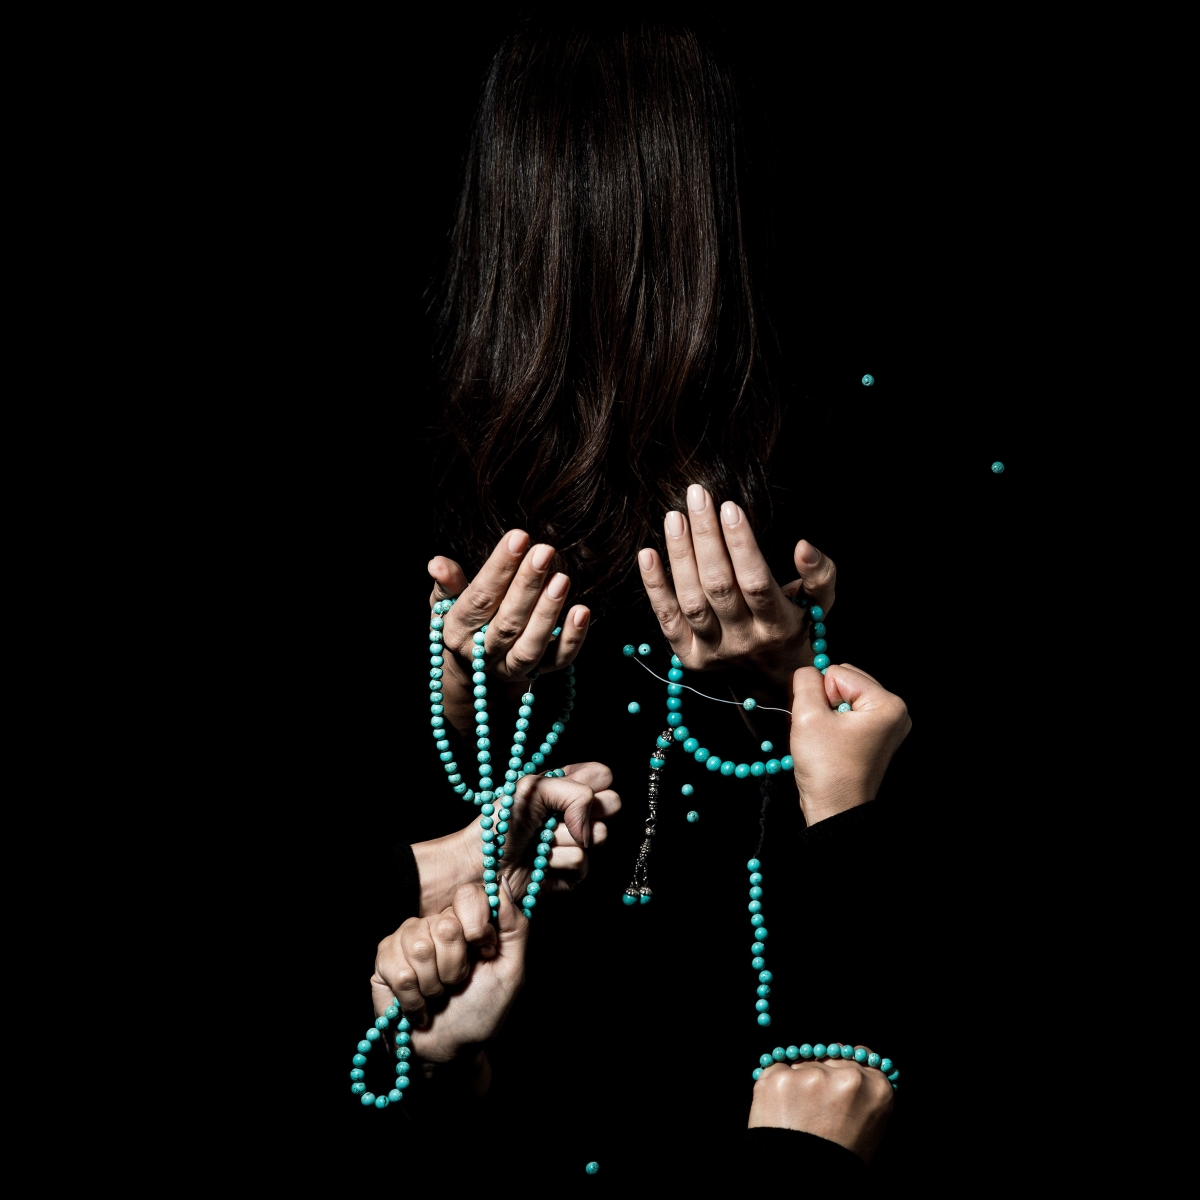 Nasim Nasr, 33 Beads (Unworried) #2